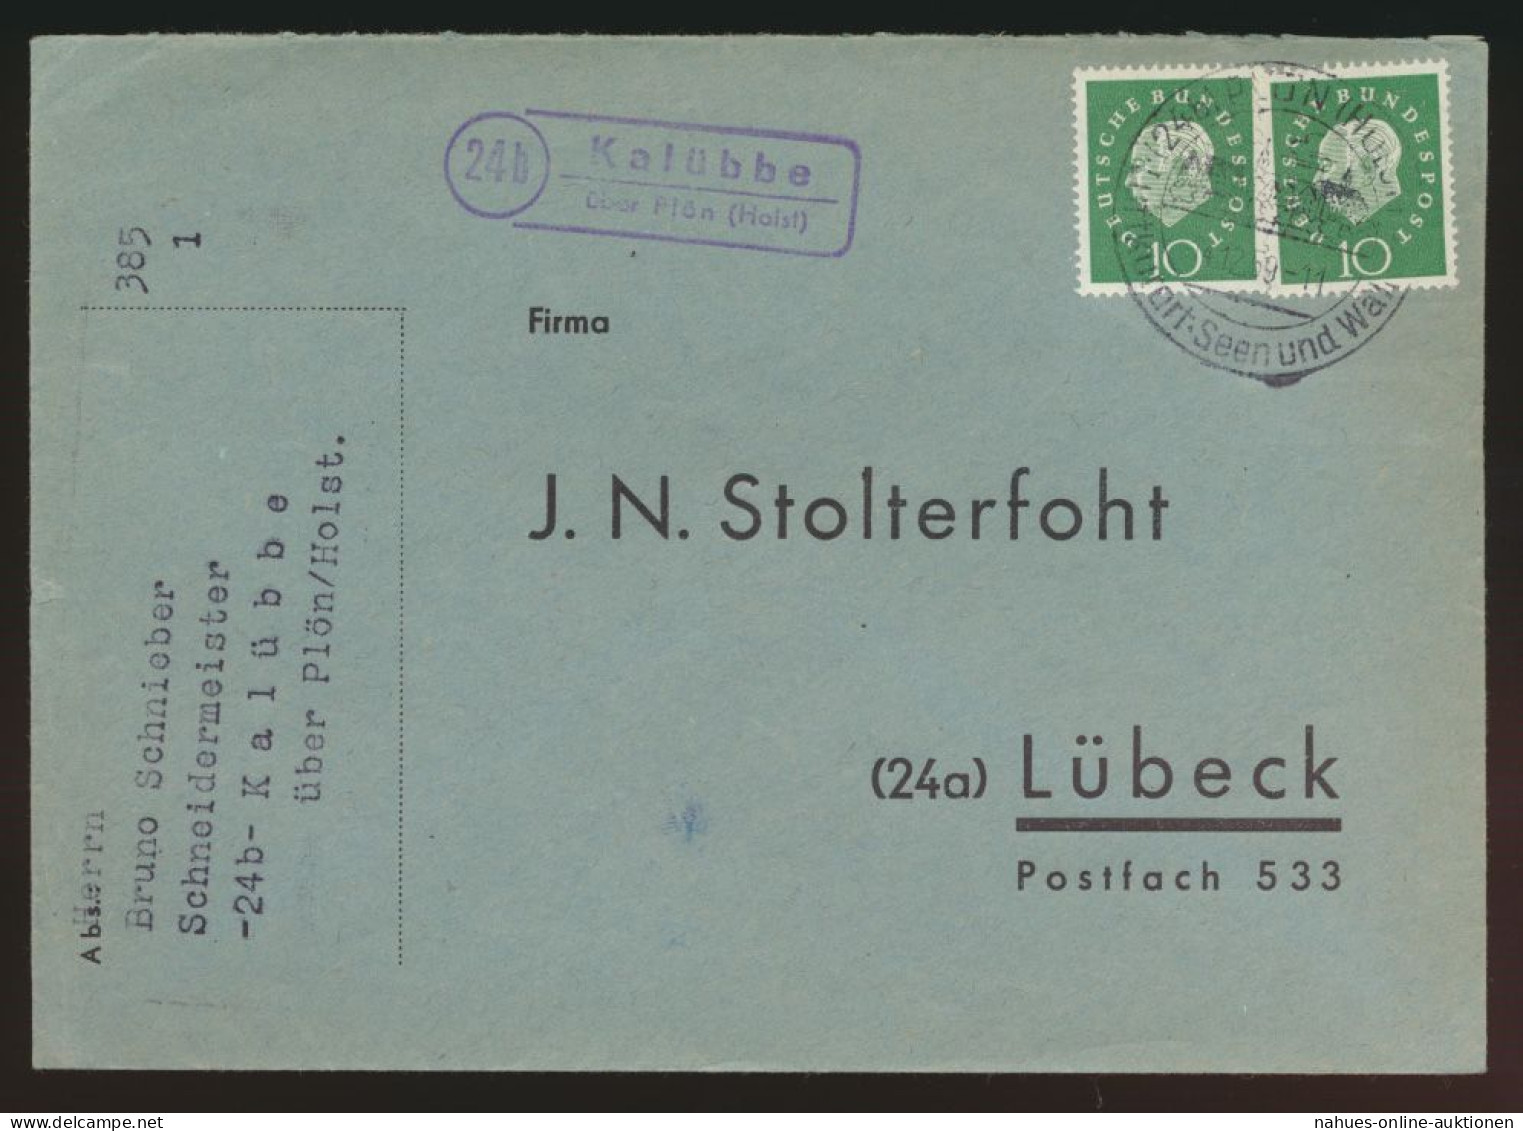 Landpoststempel Kalübbe über Plön Schleswig Holstein Brief Bund MEF Heuss - Lettres & Documents